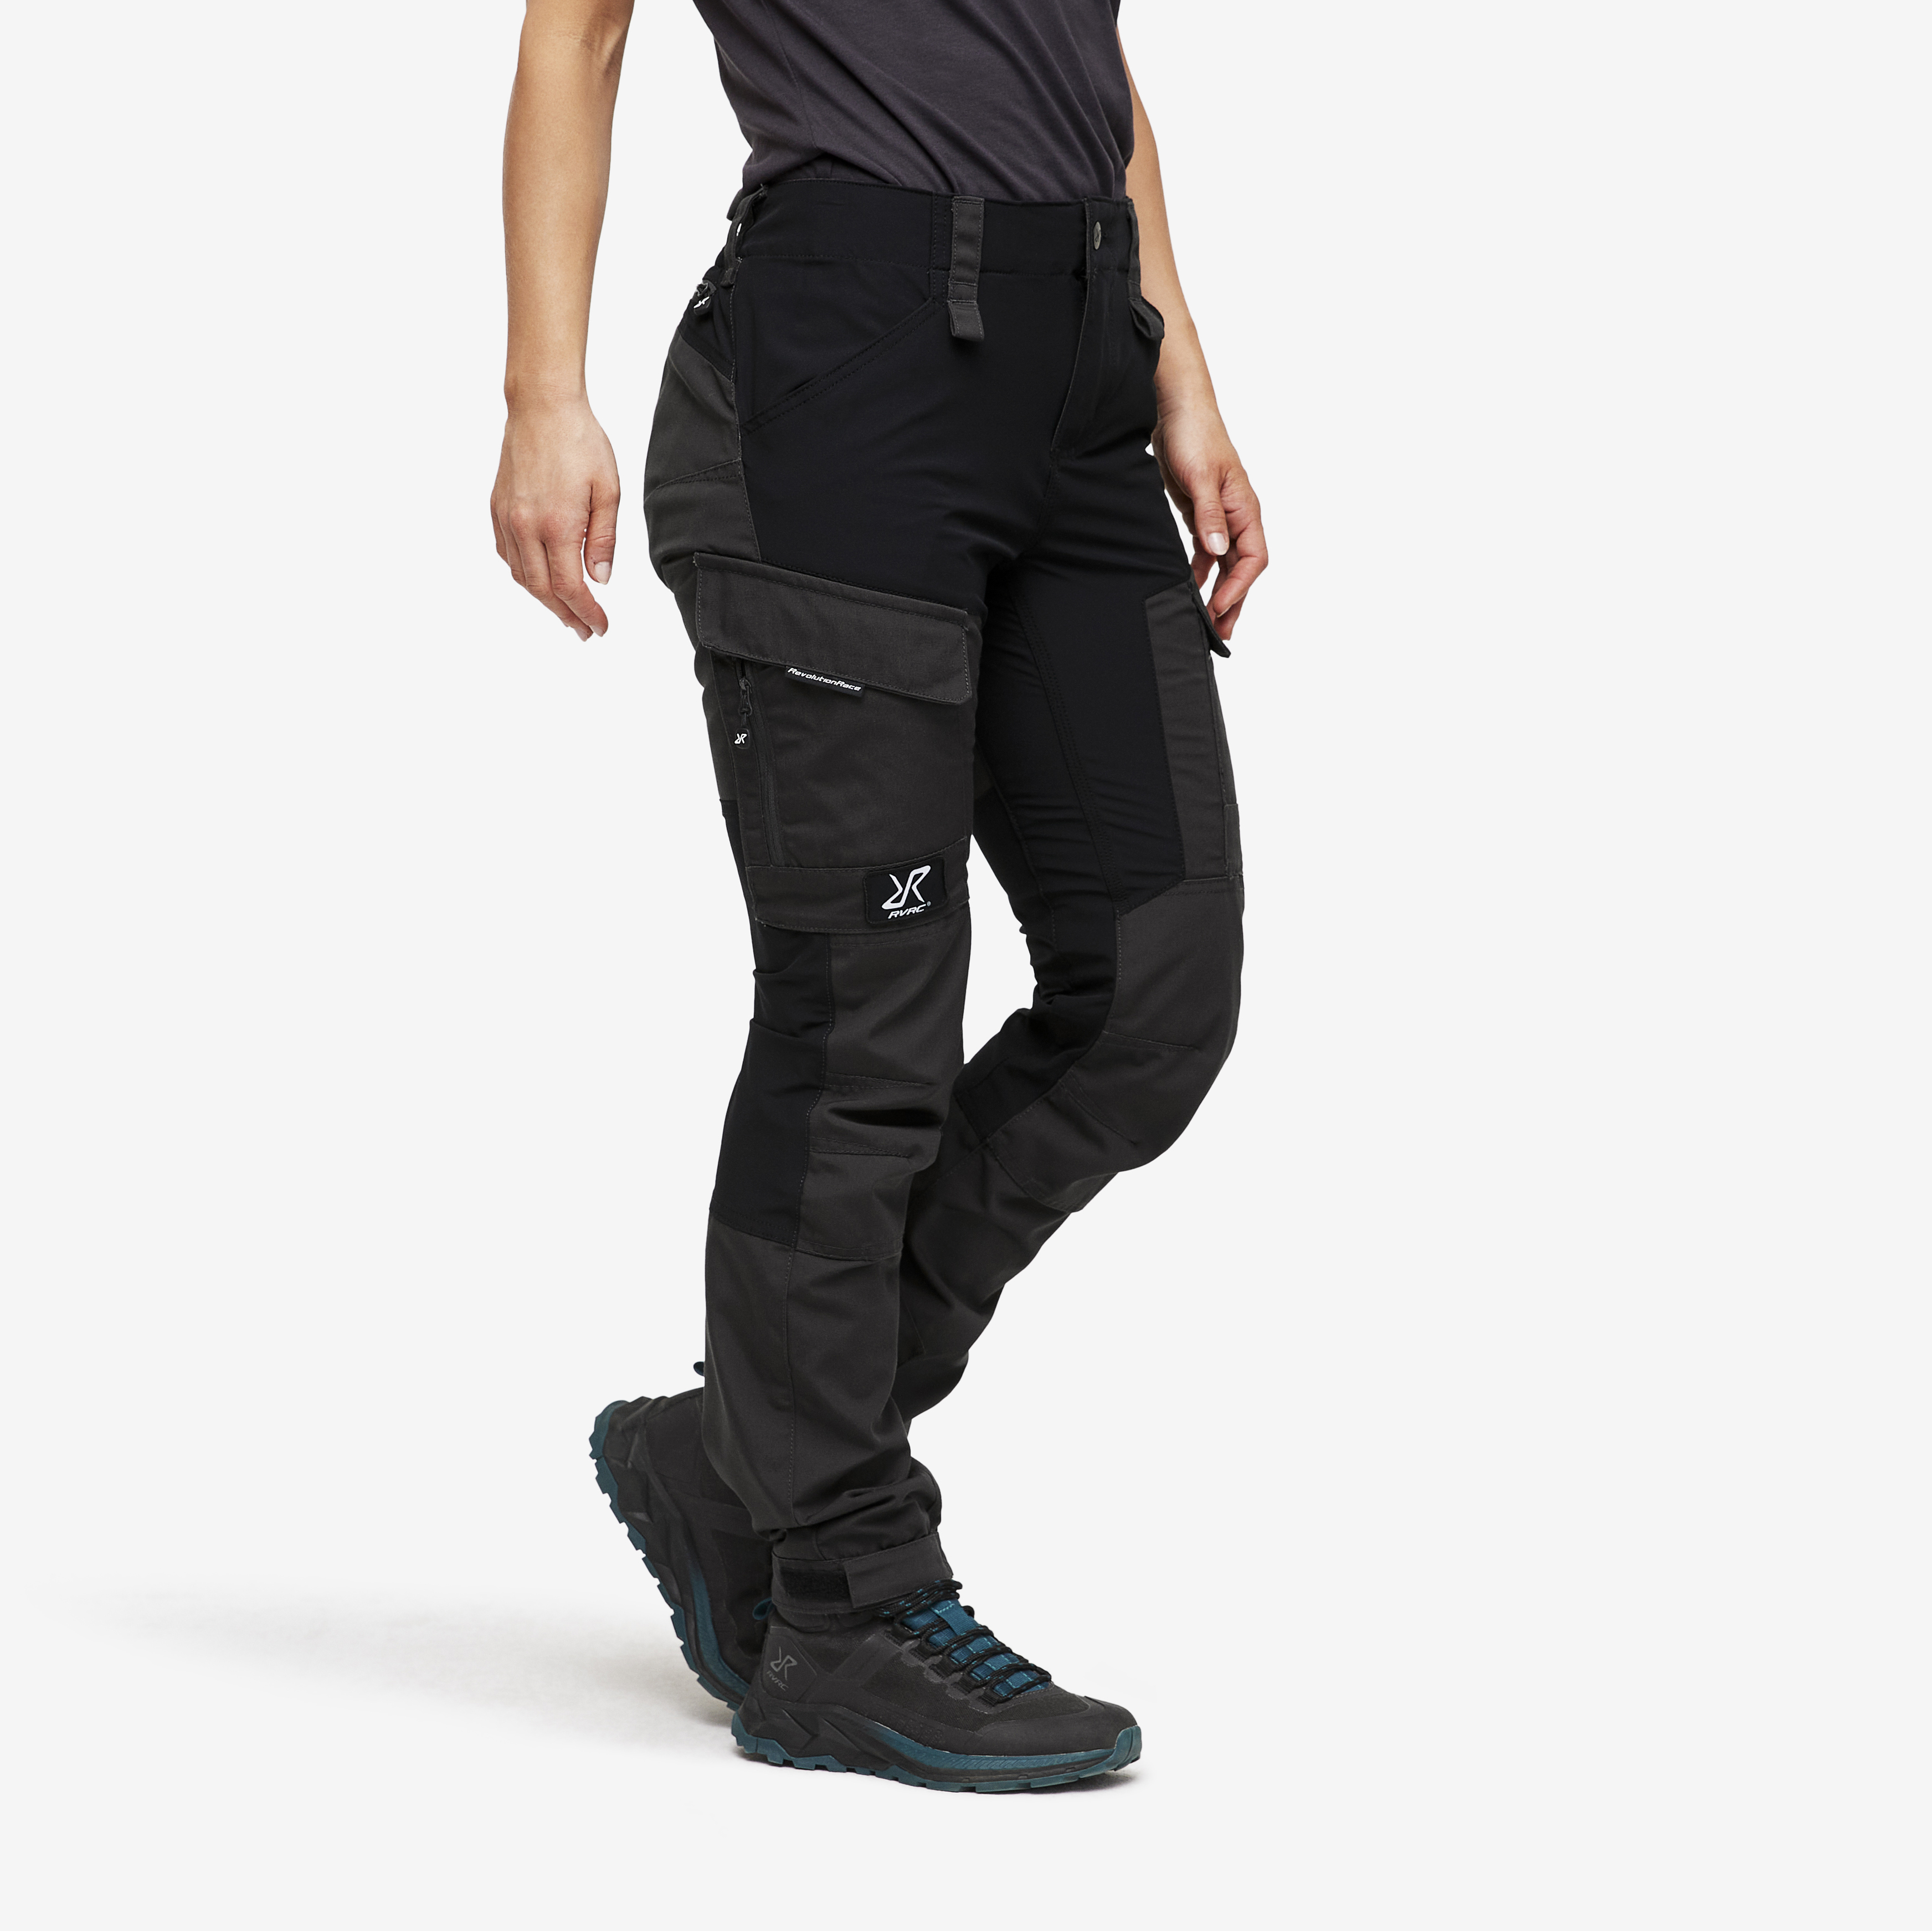 RVRC GP Short walking trousers for women in black